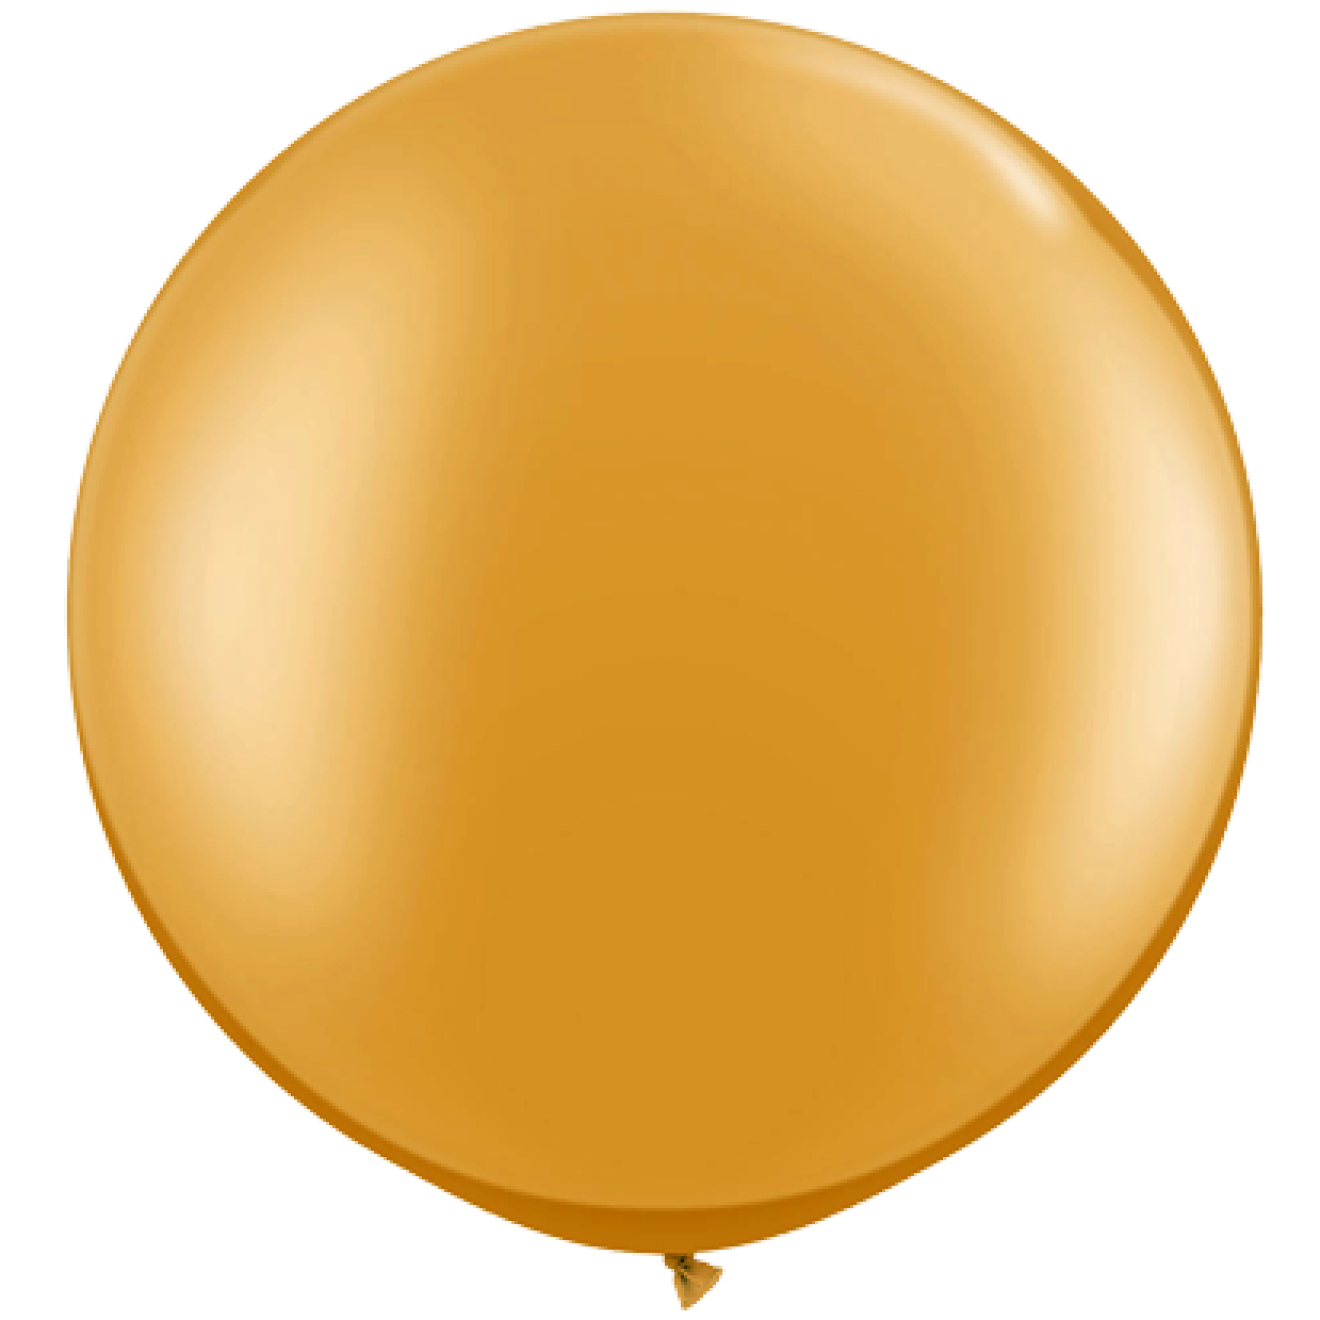 Riesenballon Gold - Metallic (Glänzend) Ø 80-100 cm